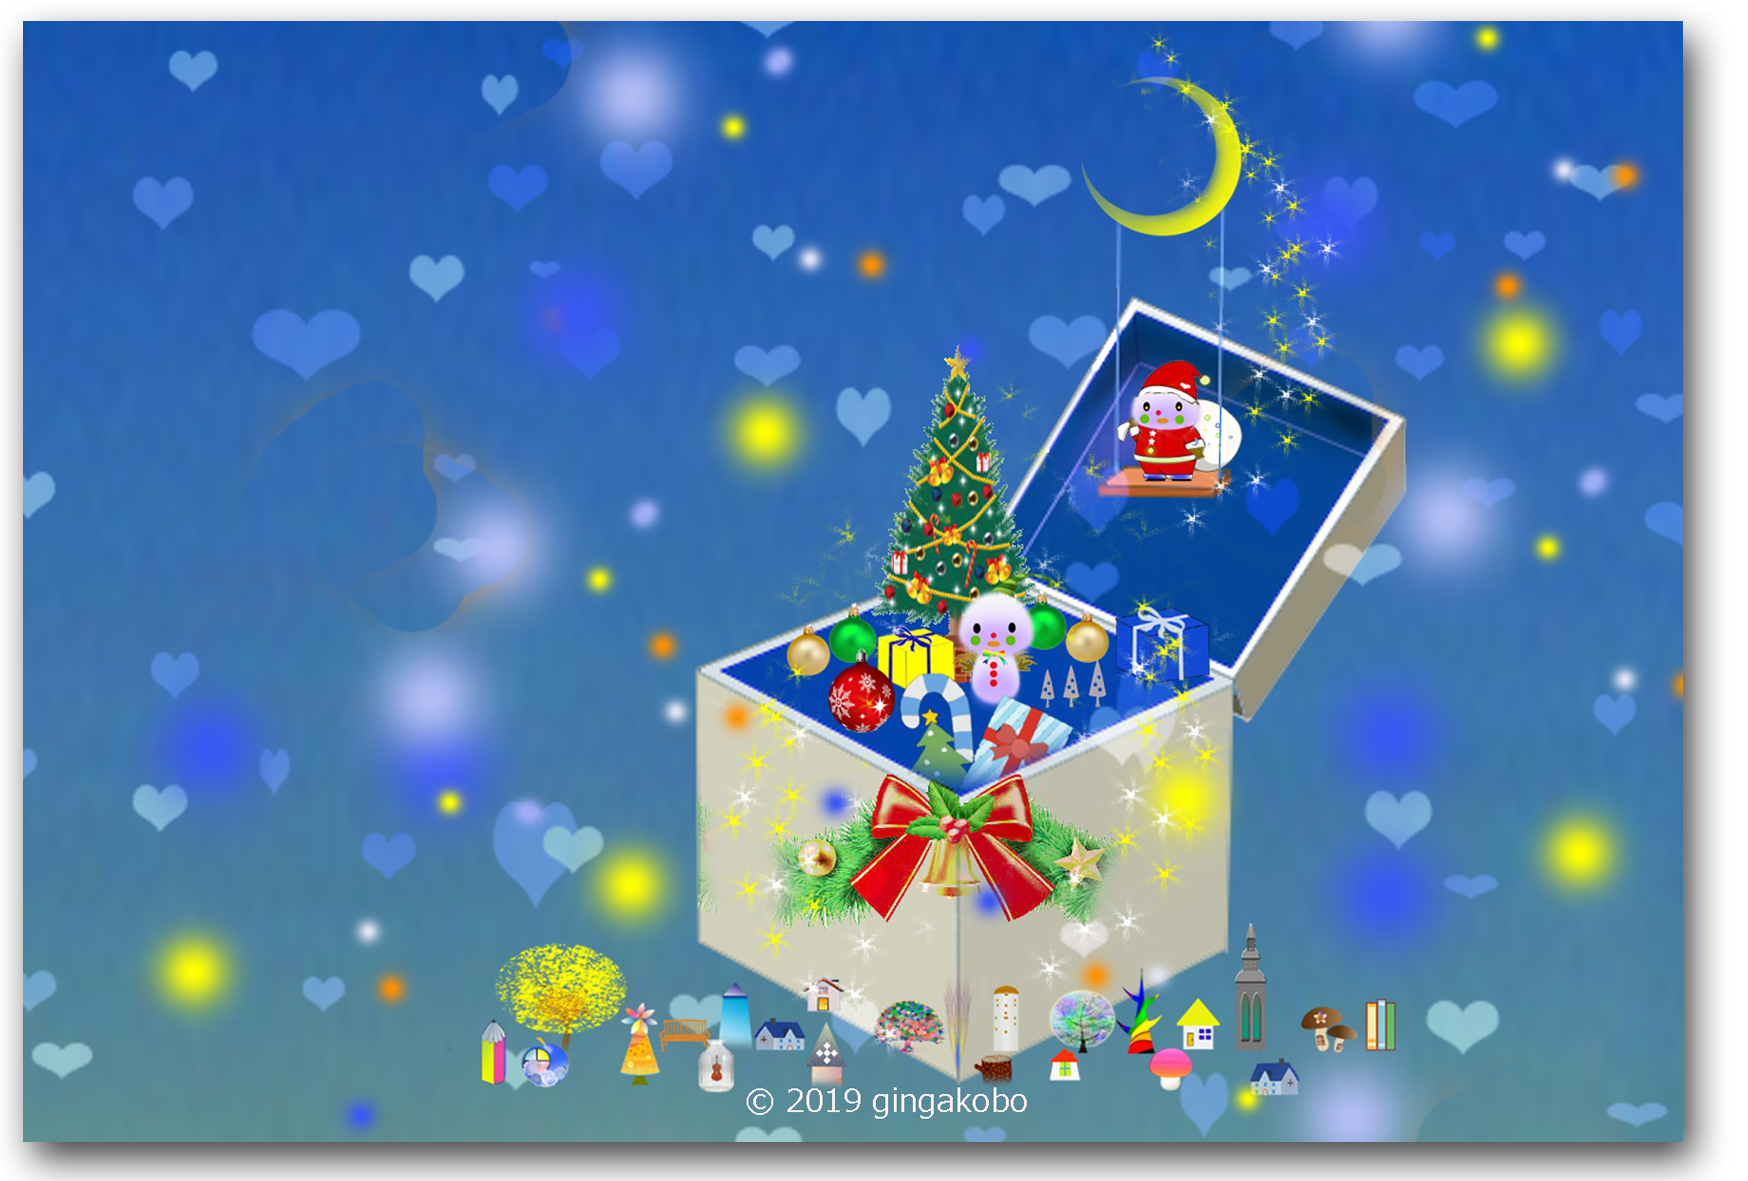 しあわせのクリスマスプレゼント ほっこり癒しのイラストポストカード2枚組 No 903 Iichi ハンドメイド クラフト作品 手仕事品の通販